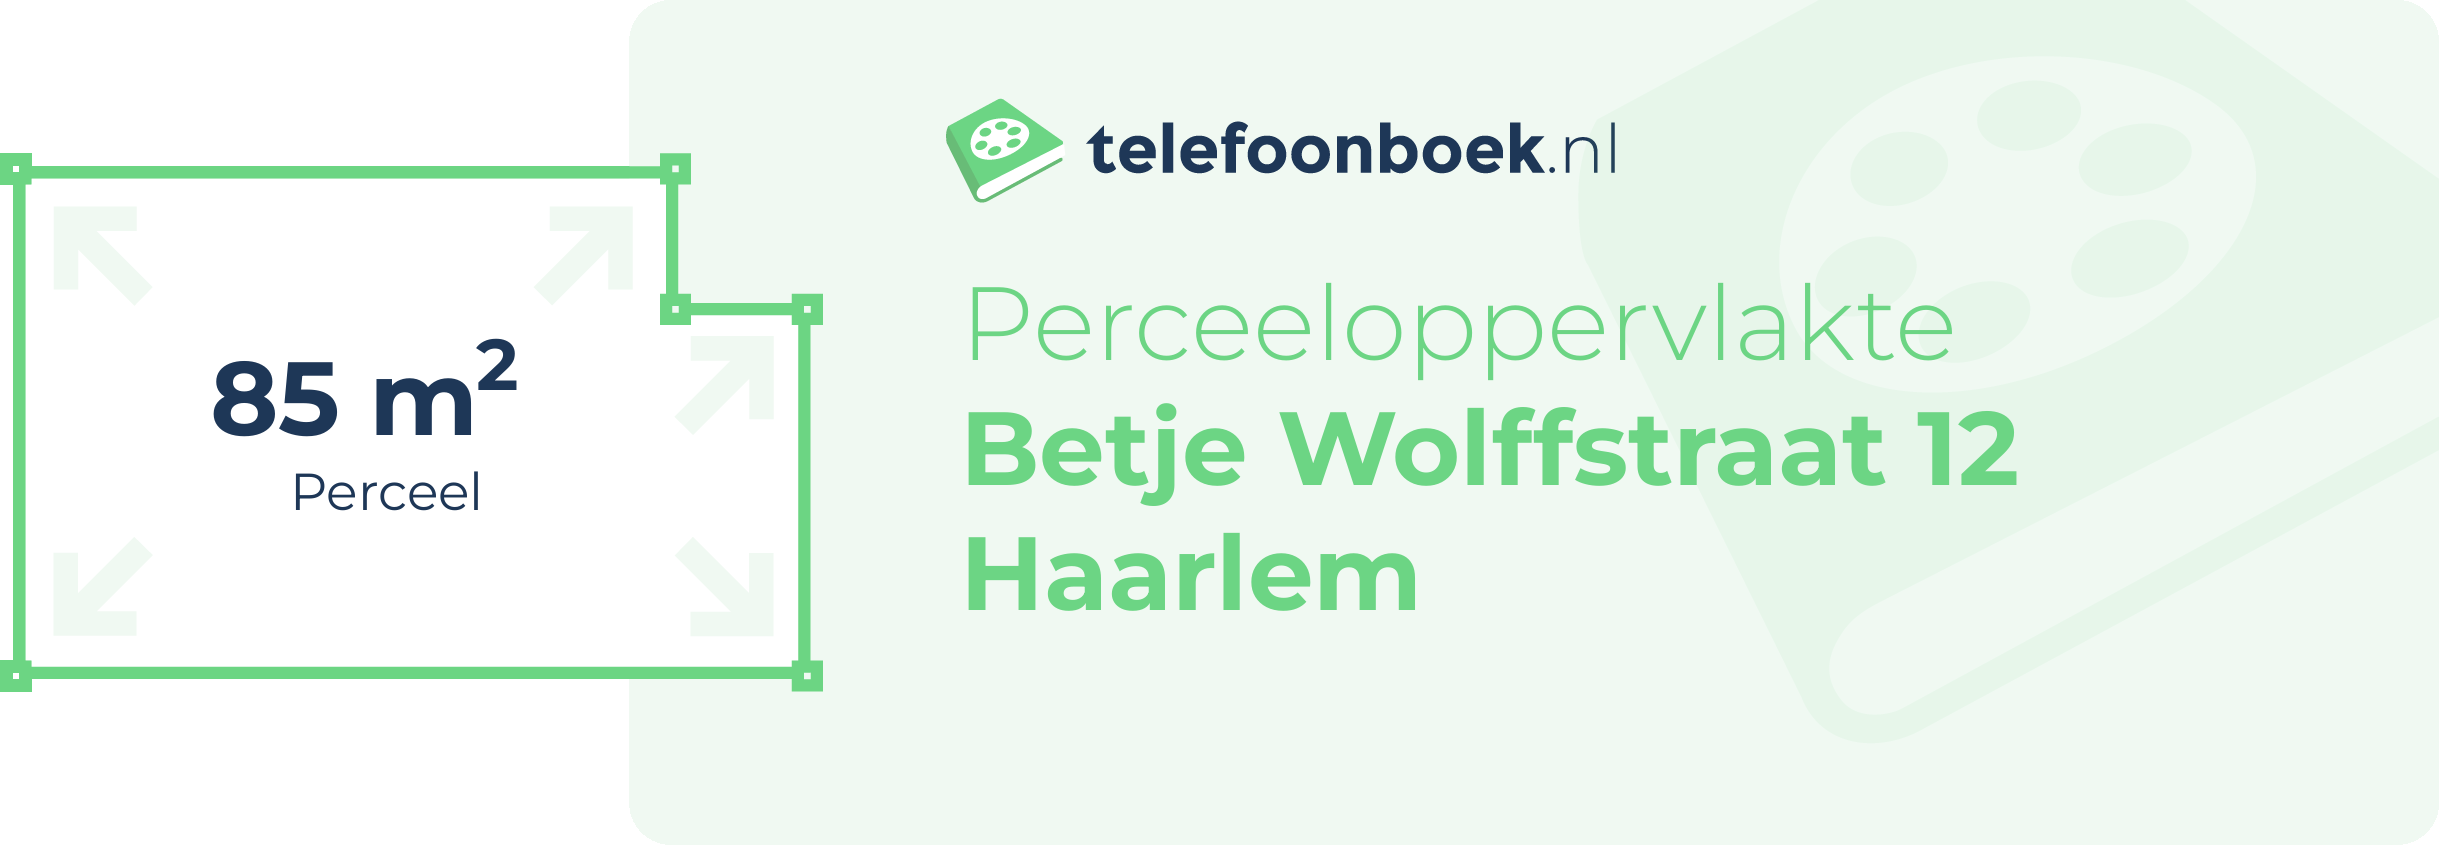 Perceeloppervlakte Betje Wolffstraat 12 Haarlem